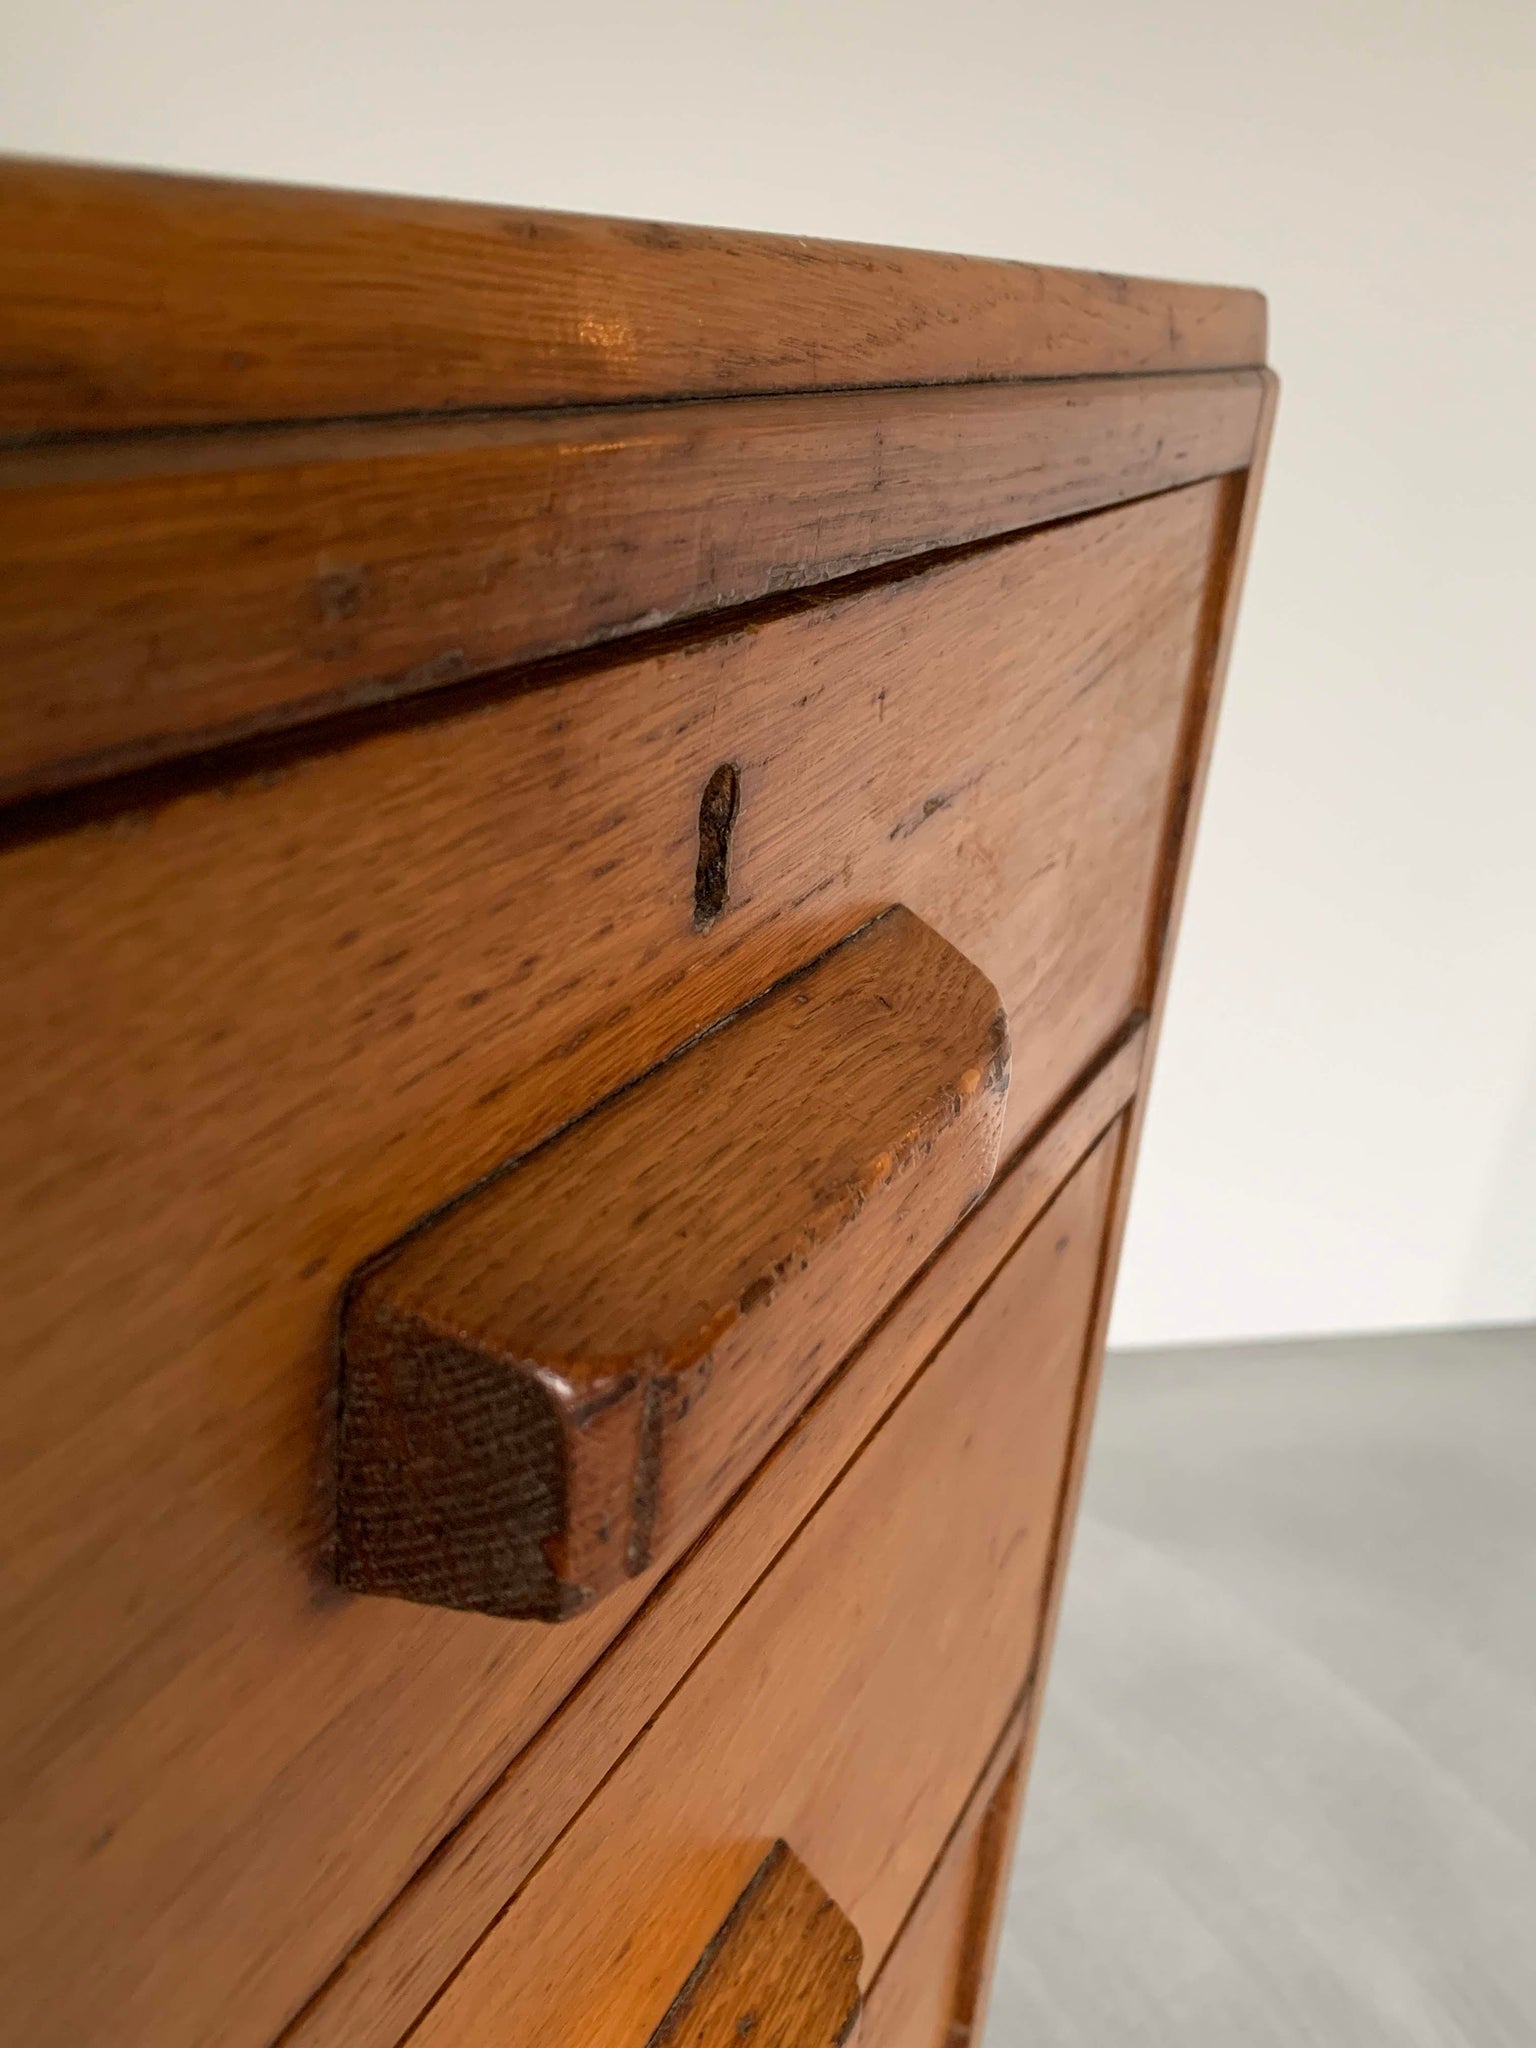 オーク チェストドロワーズ / oak chest of drawers #0040